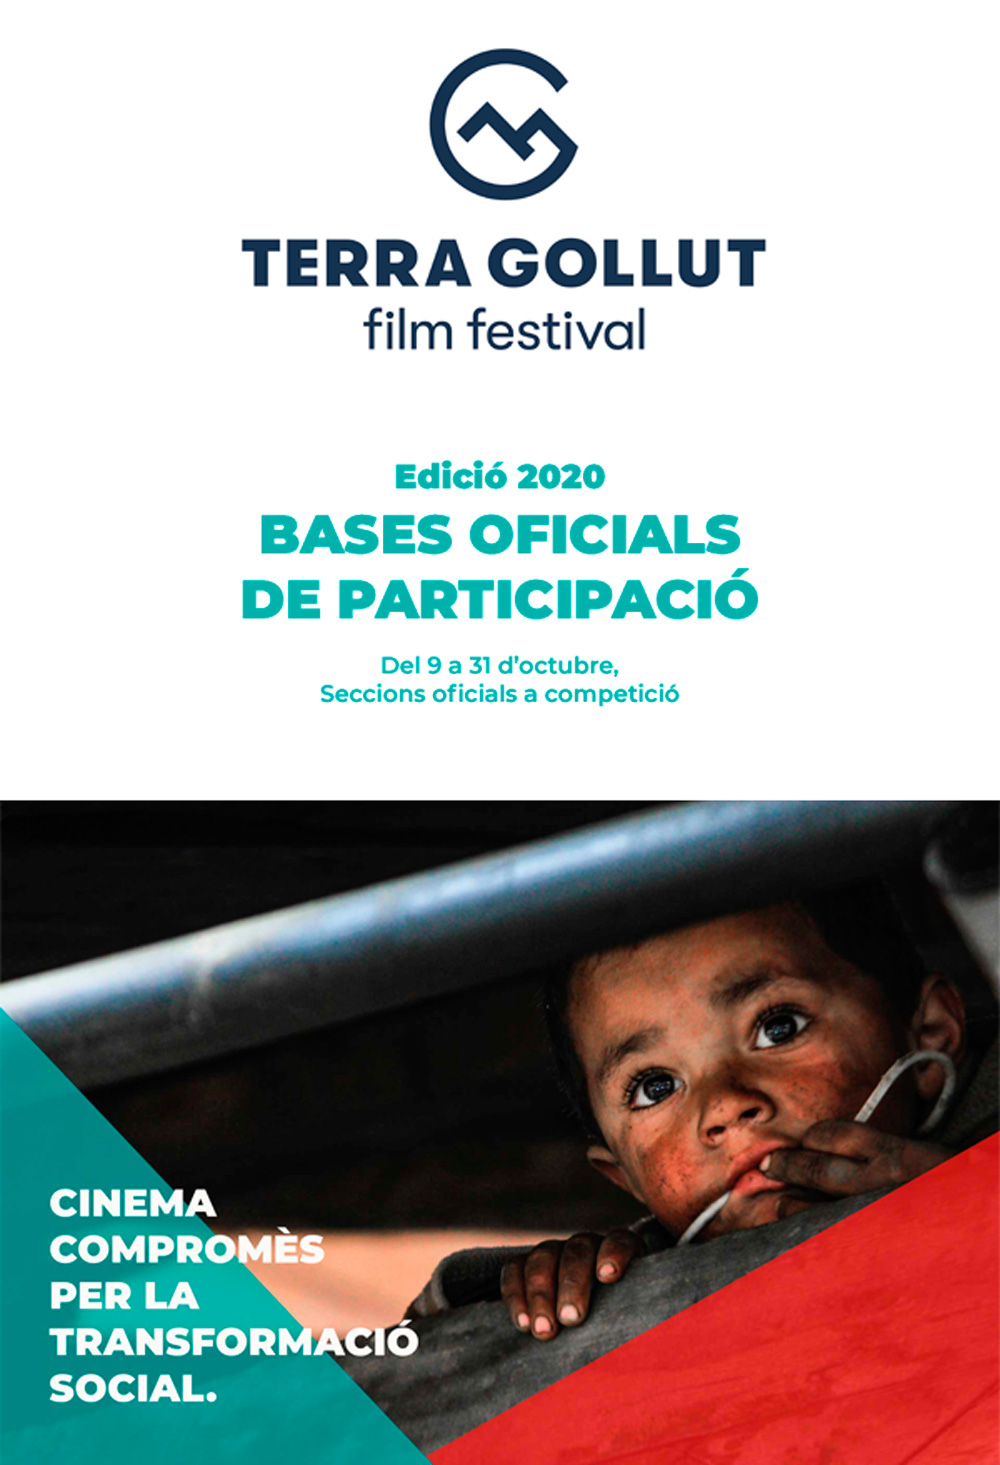 BASES DE PARTICIPACIÓ 2020 TERRA GOLLUT film festival Cinema compromès per la transformació social